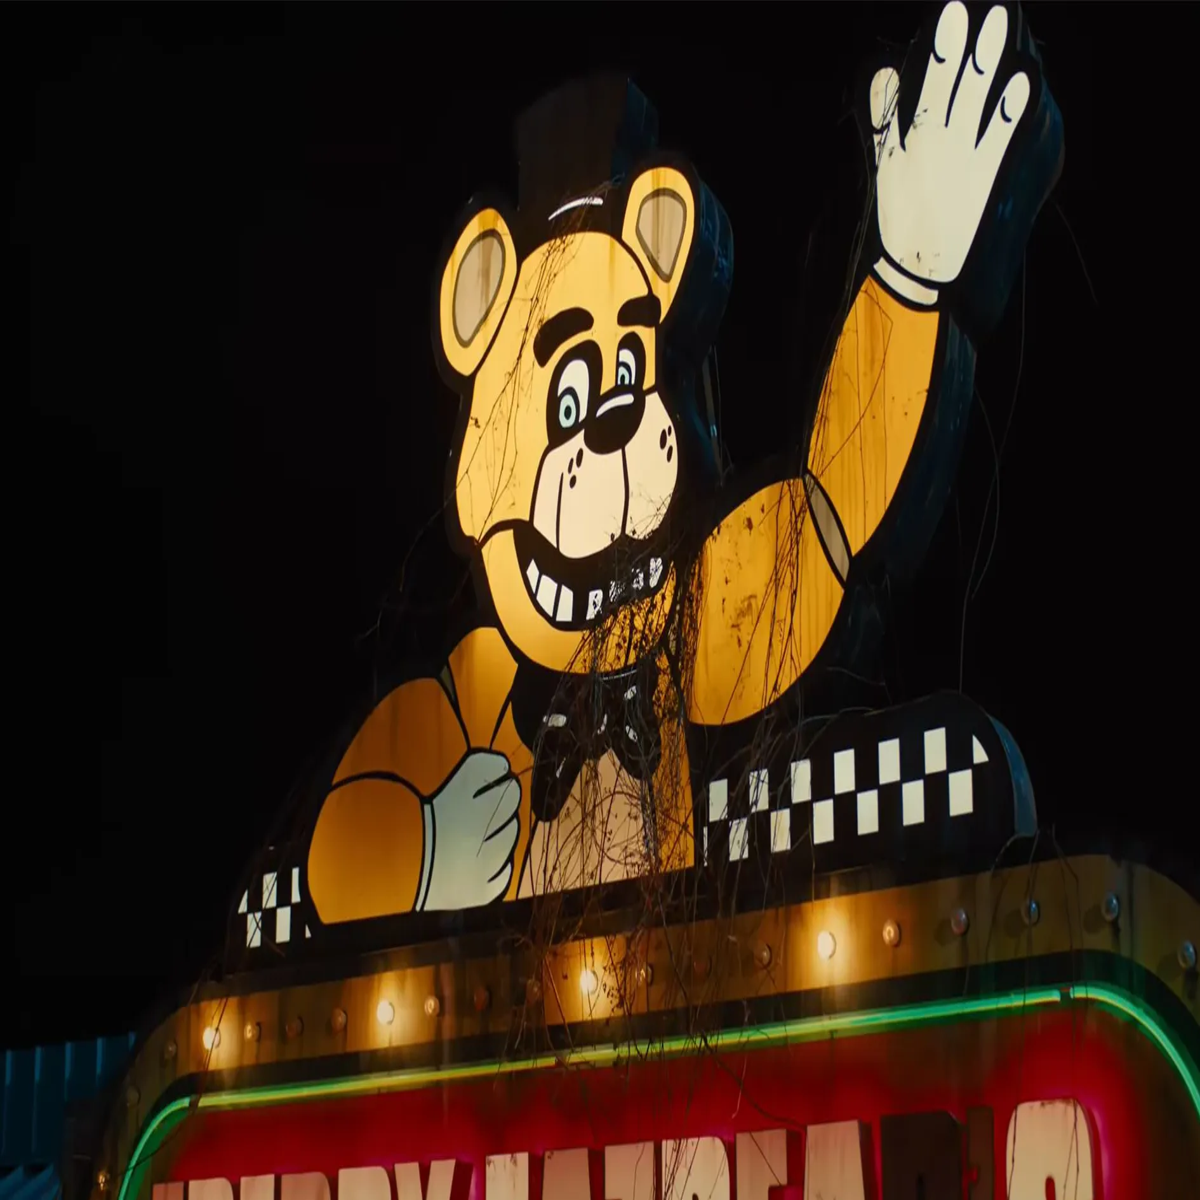 Five Nights at Freddy's': Adaptação do clássico jogo ainda vai acontecer,  revela Jason Blum - CinePOP